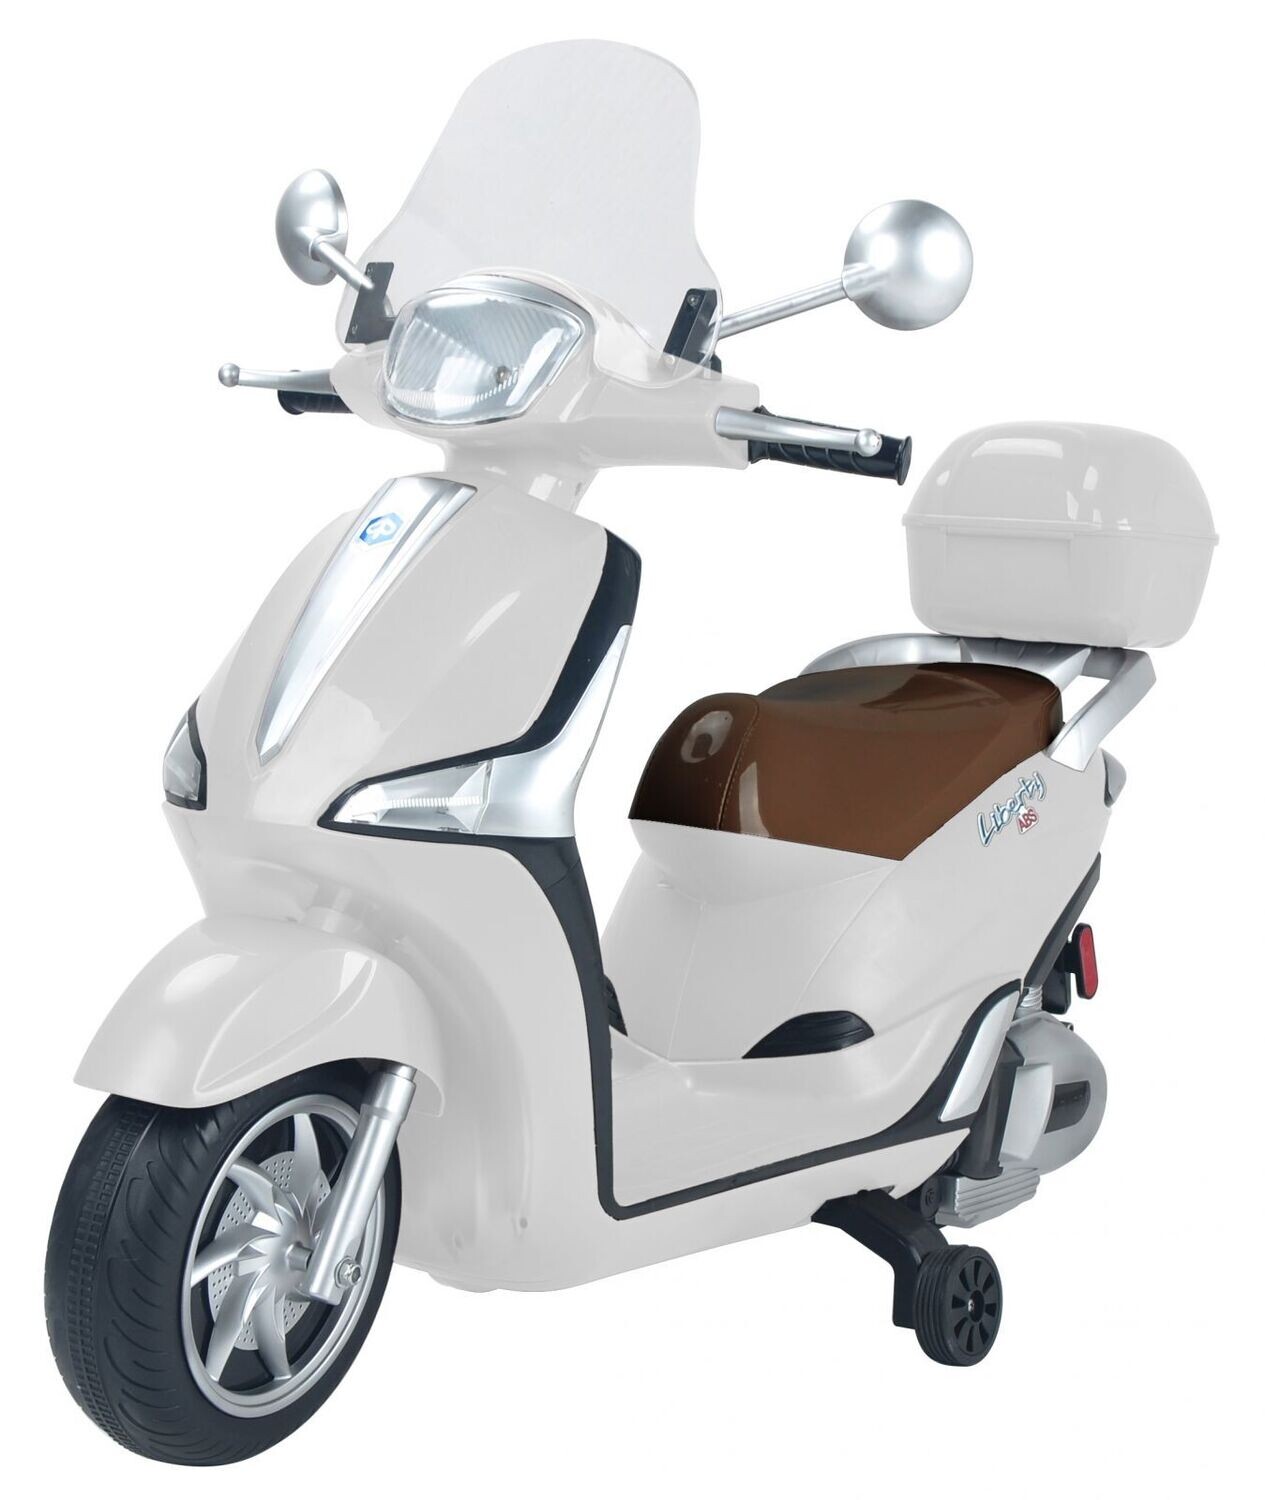 Moto Elettrica per Bambini Piaggio Liberty 12V Bianco